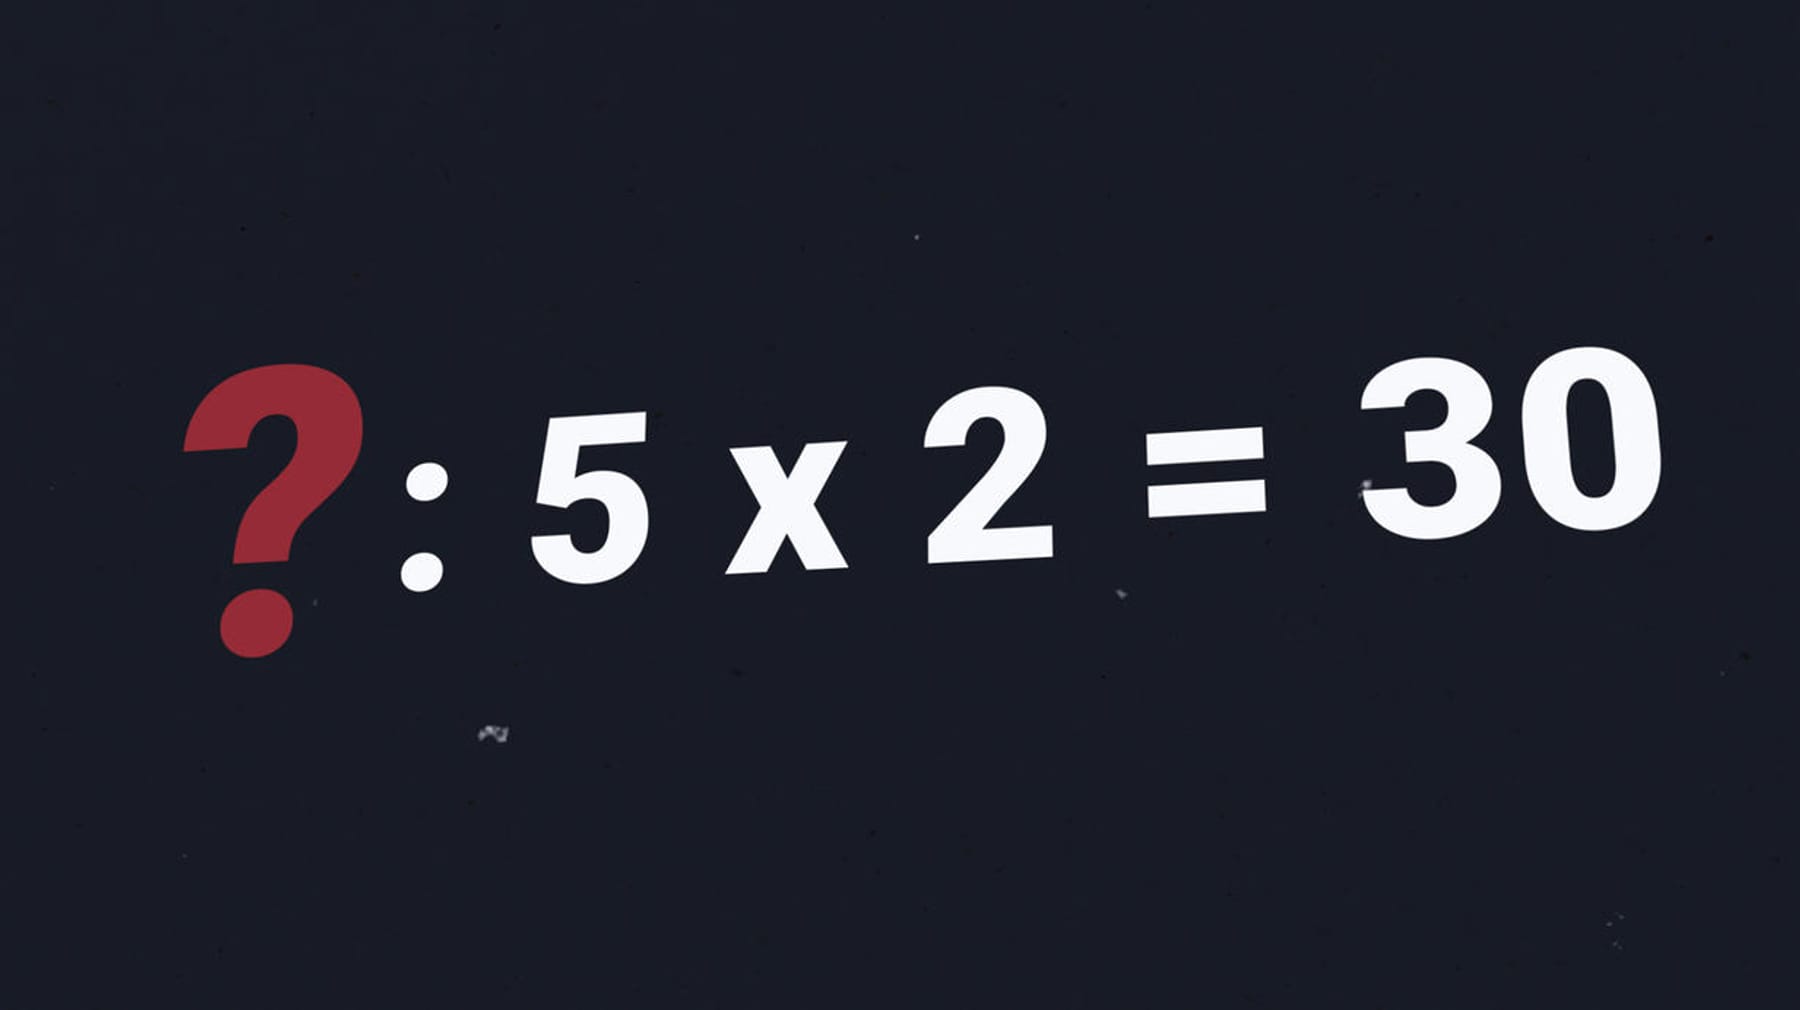 Zagadka – Jaka liczba jest potrzebna w tym zadaniu matematycznym?